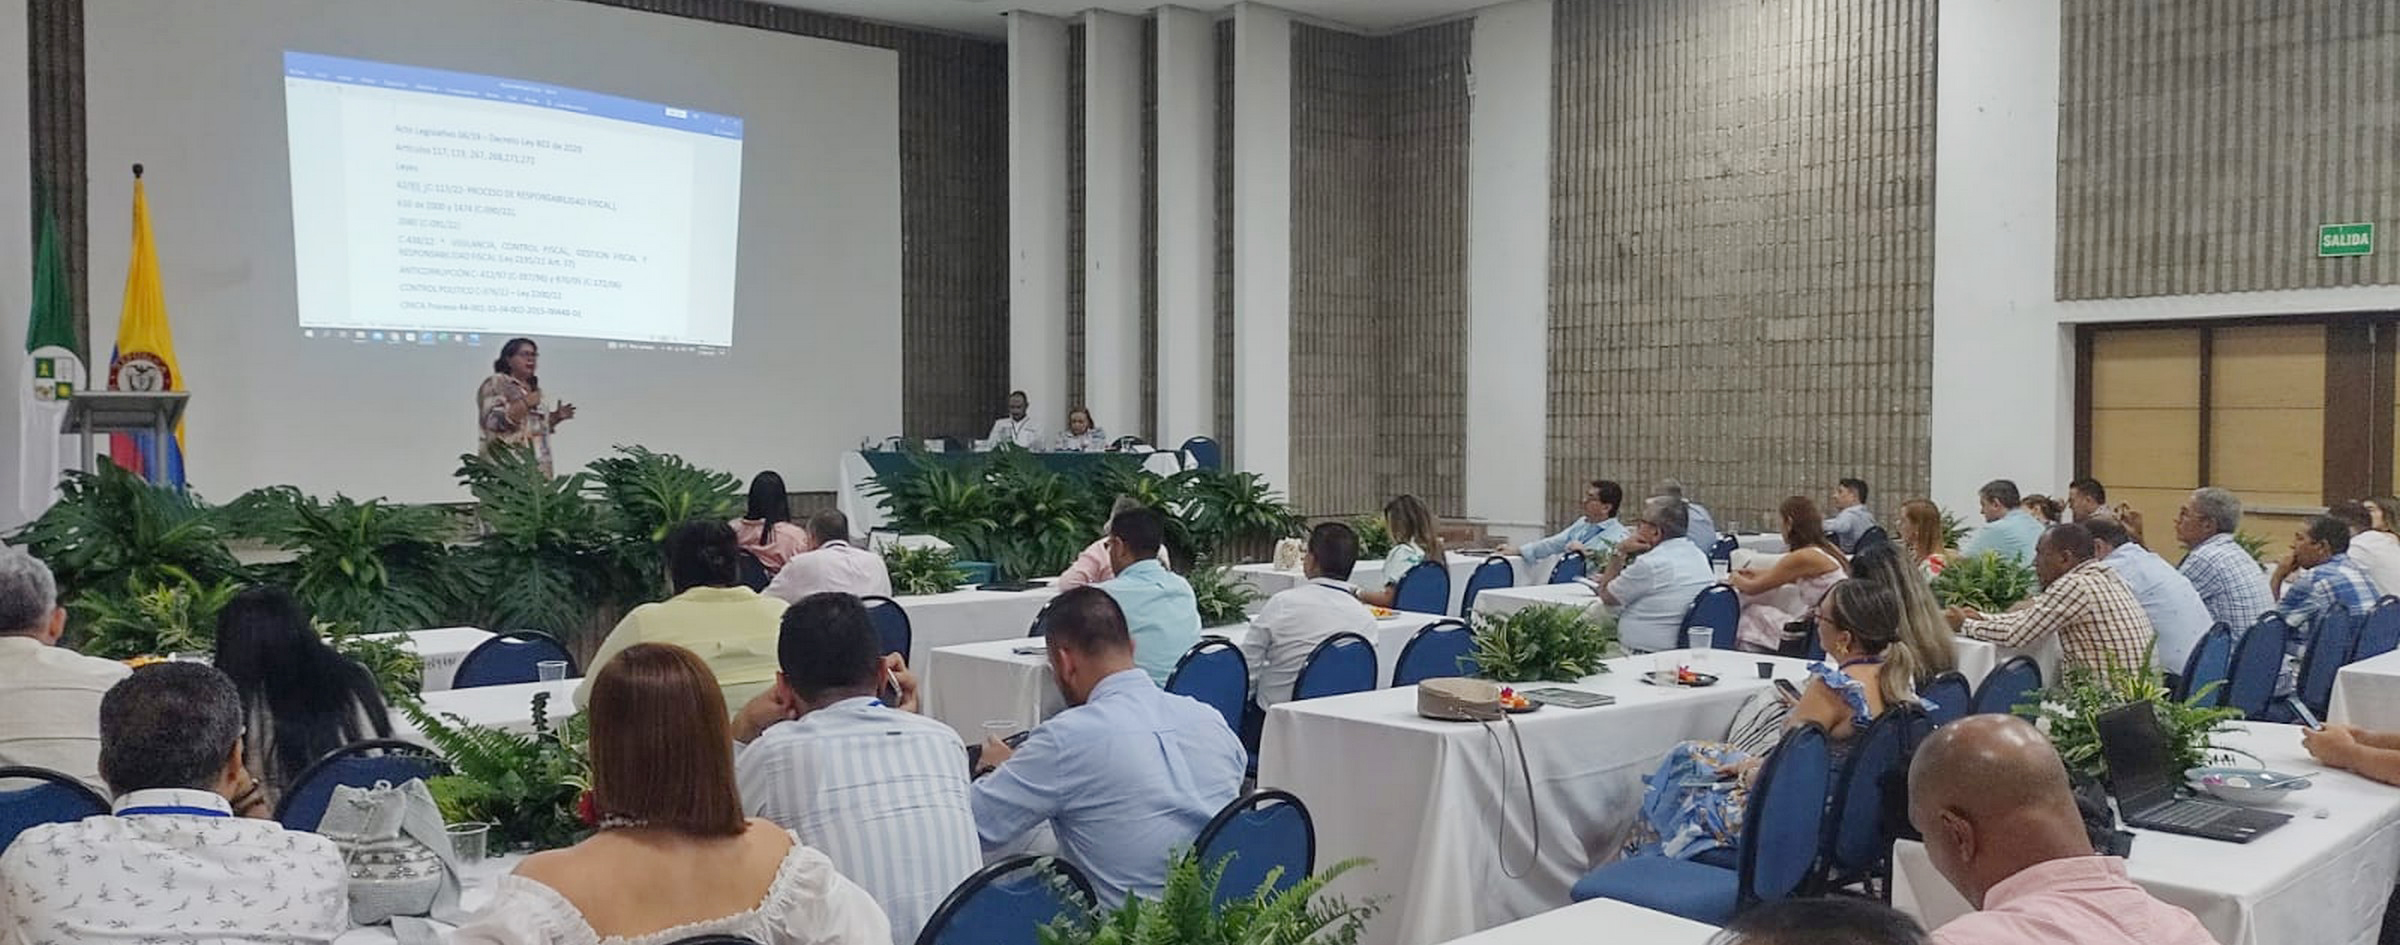 Auditora General presenta informe de contratación interadministrativa en VI Congreso Nacional de Contralores, en Riohacha el 27 de abril de 2023